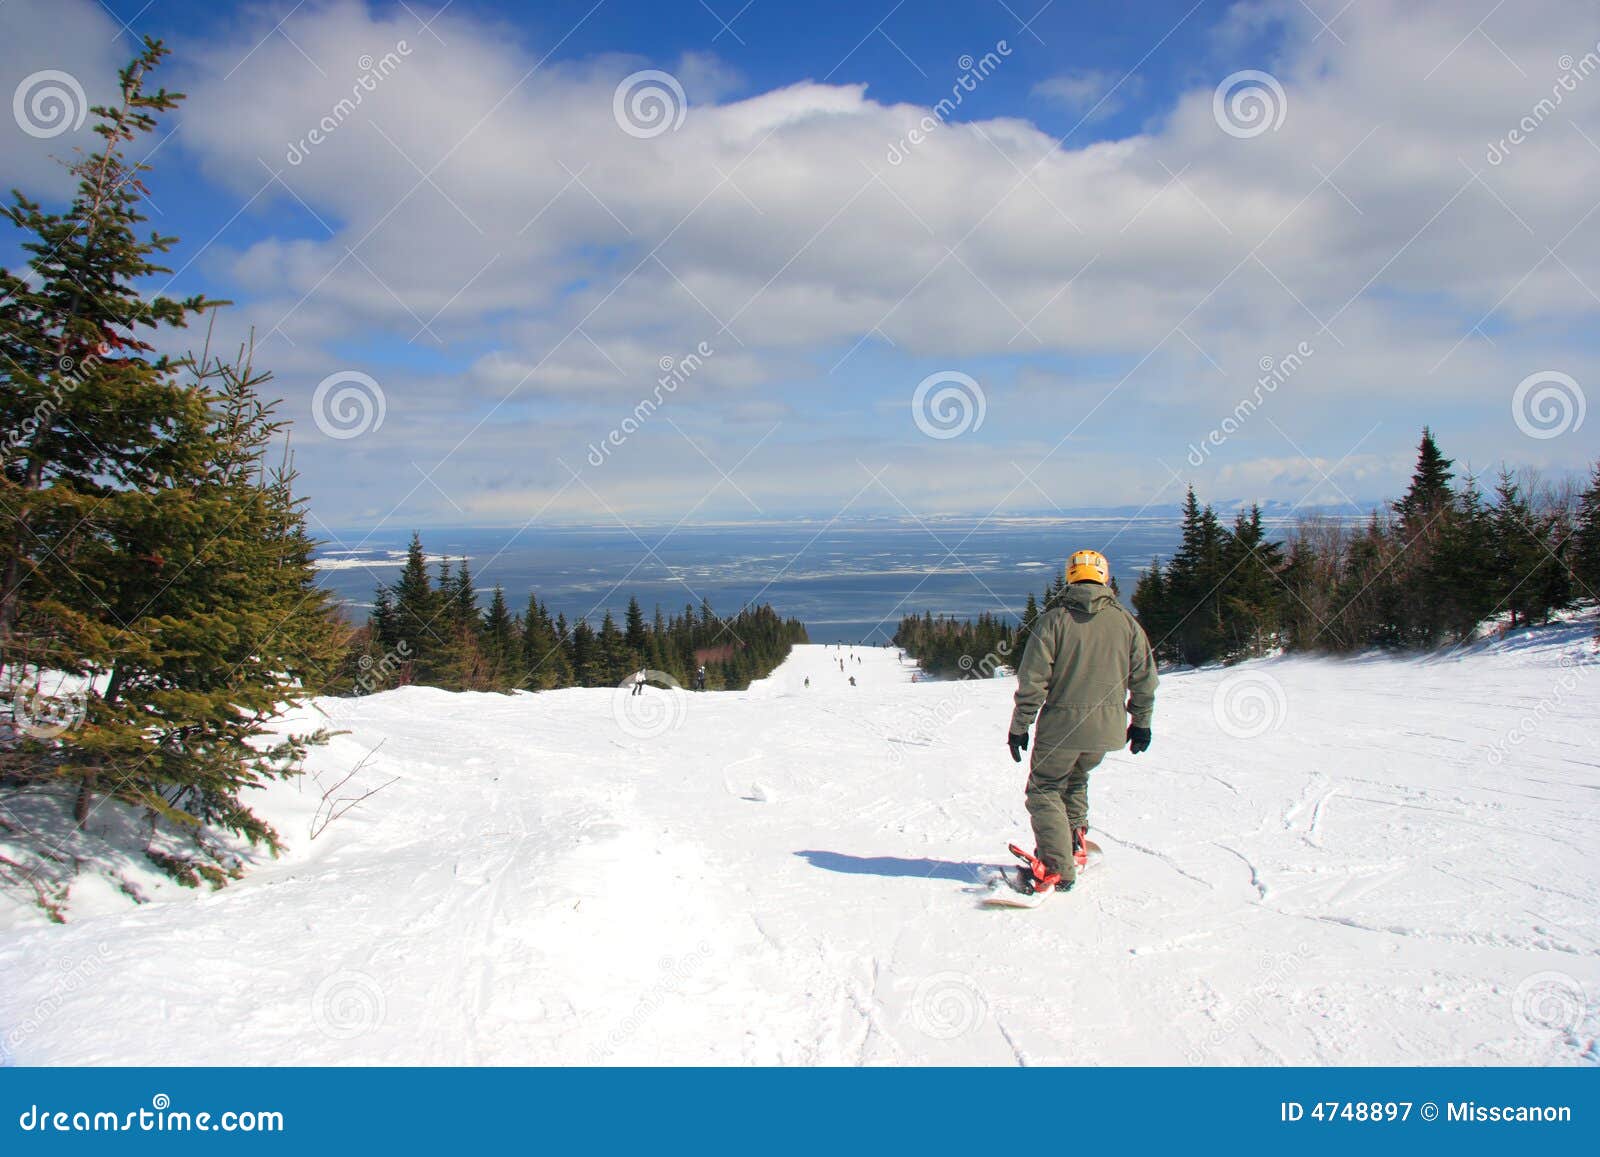 ski at le massif